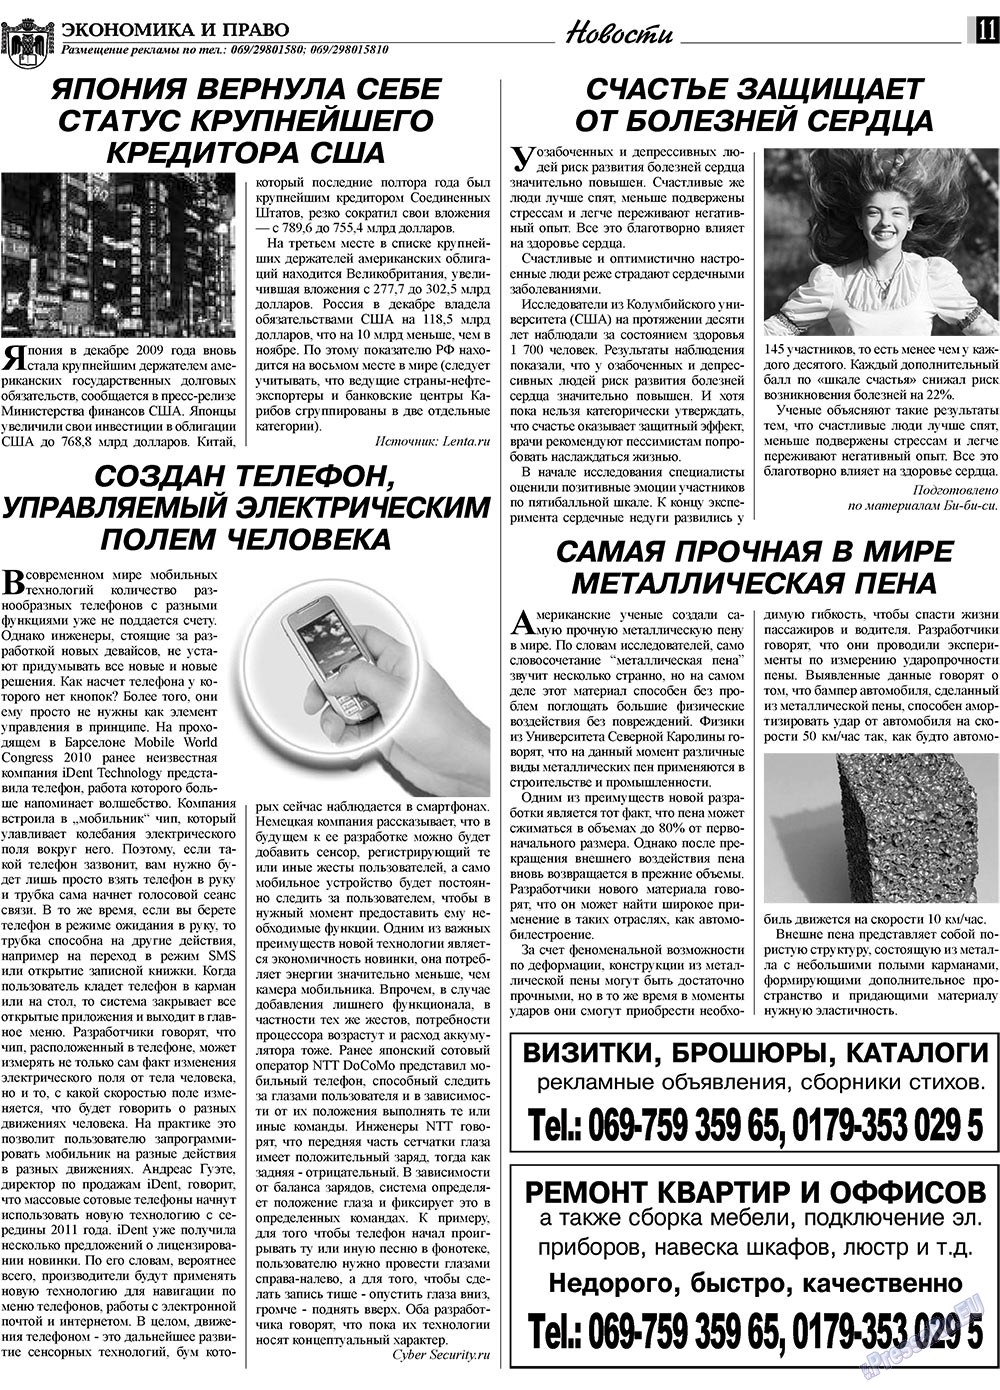 Экономика и право, газета. 2010 №3 стр.11